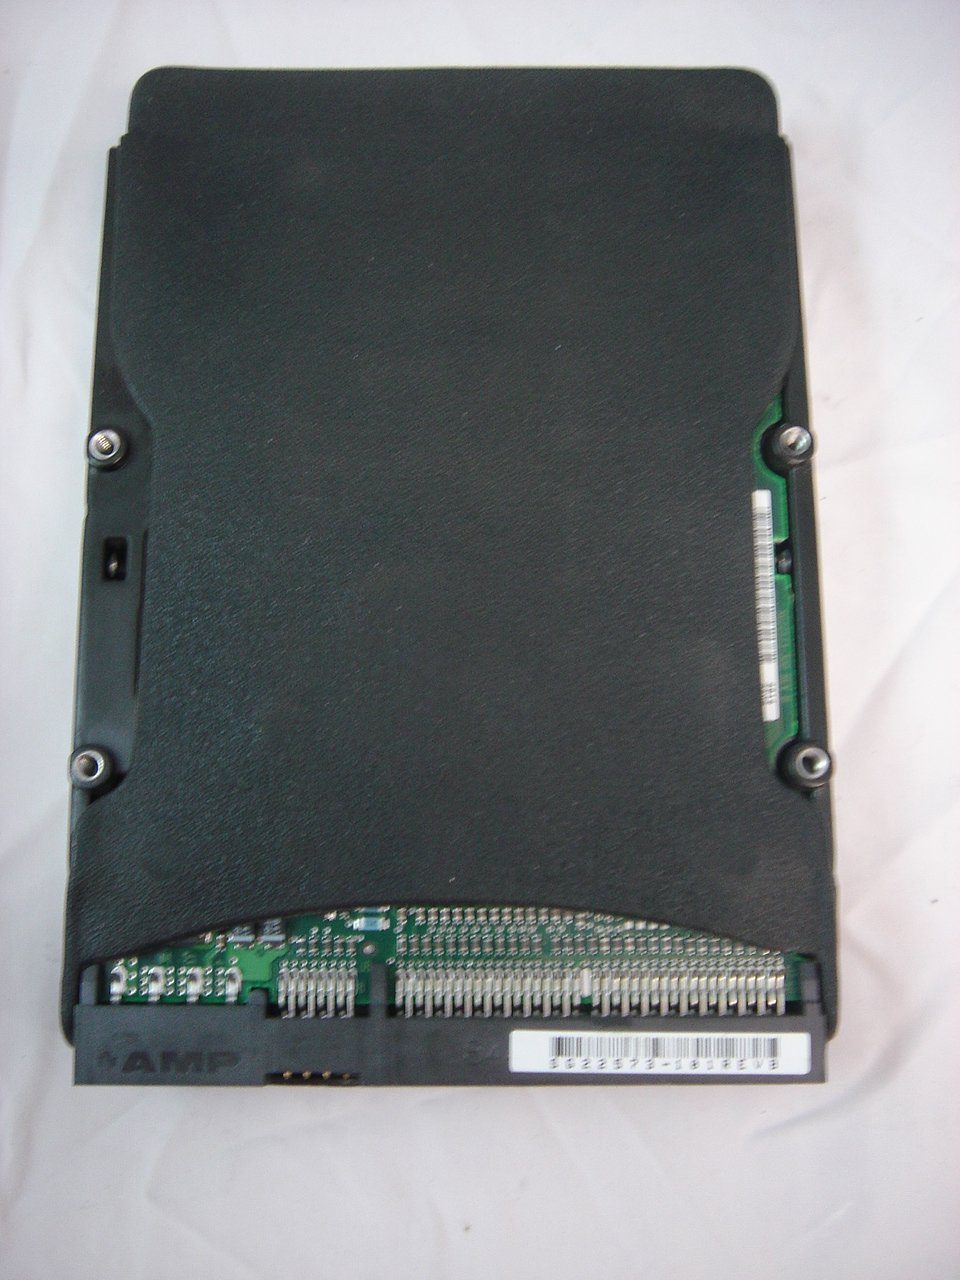 9M9004-304 - Seagate 8.4GB IDE 5400rpm 3.5in HDD - Refurbished